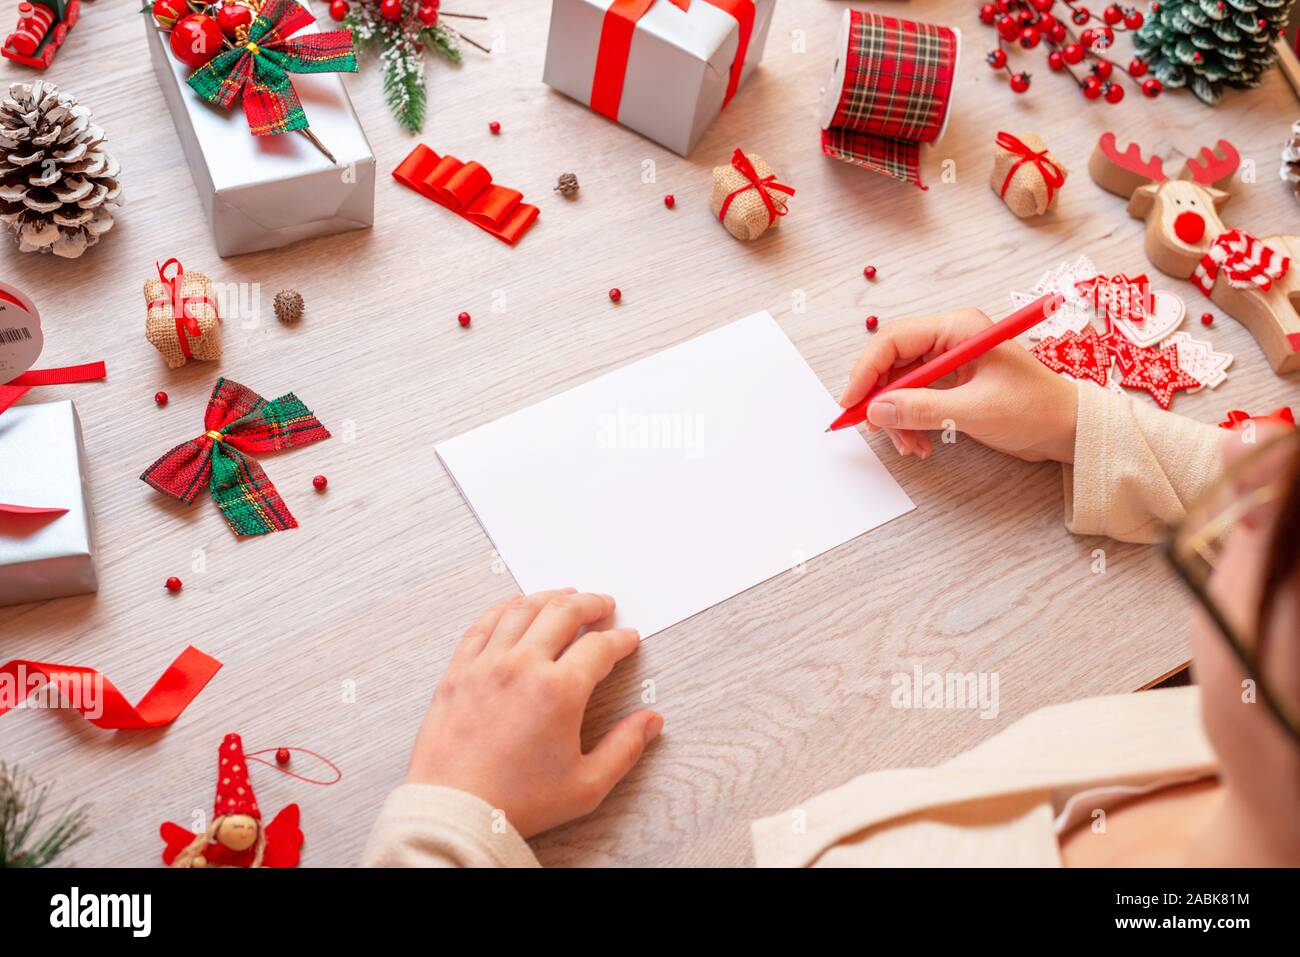 Fille écrit sur papier, entouré de cadeaux de Noël et des décorations. Le papier est vierge, pour ajouter du texte de carte de vœux. Banque D'Images